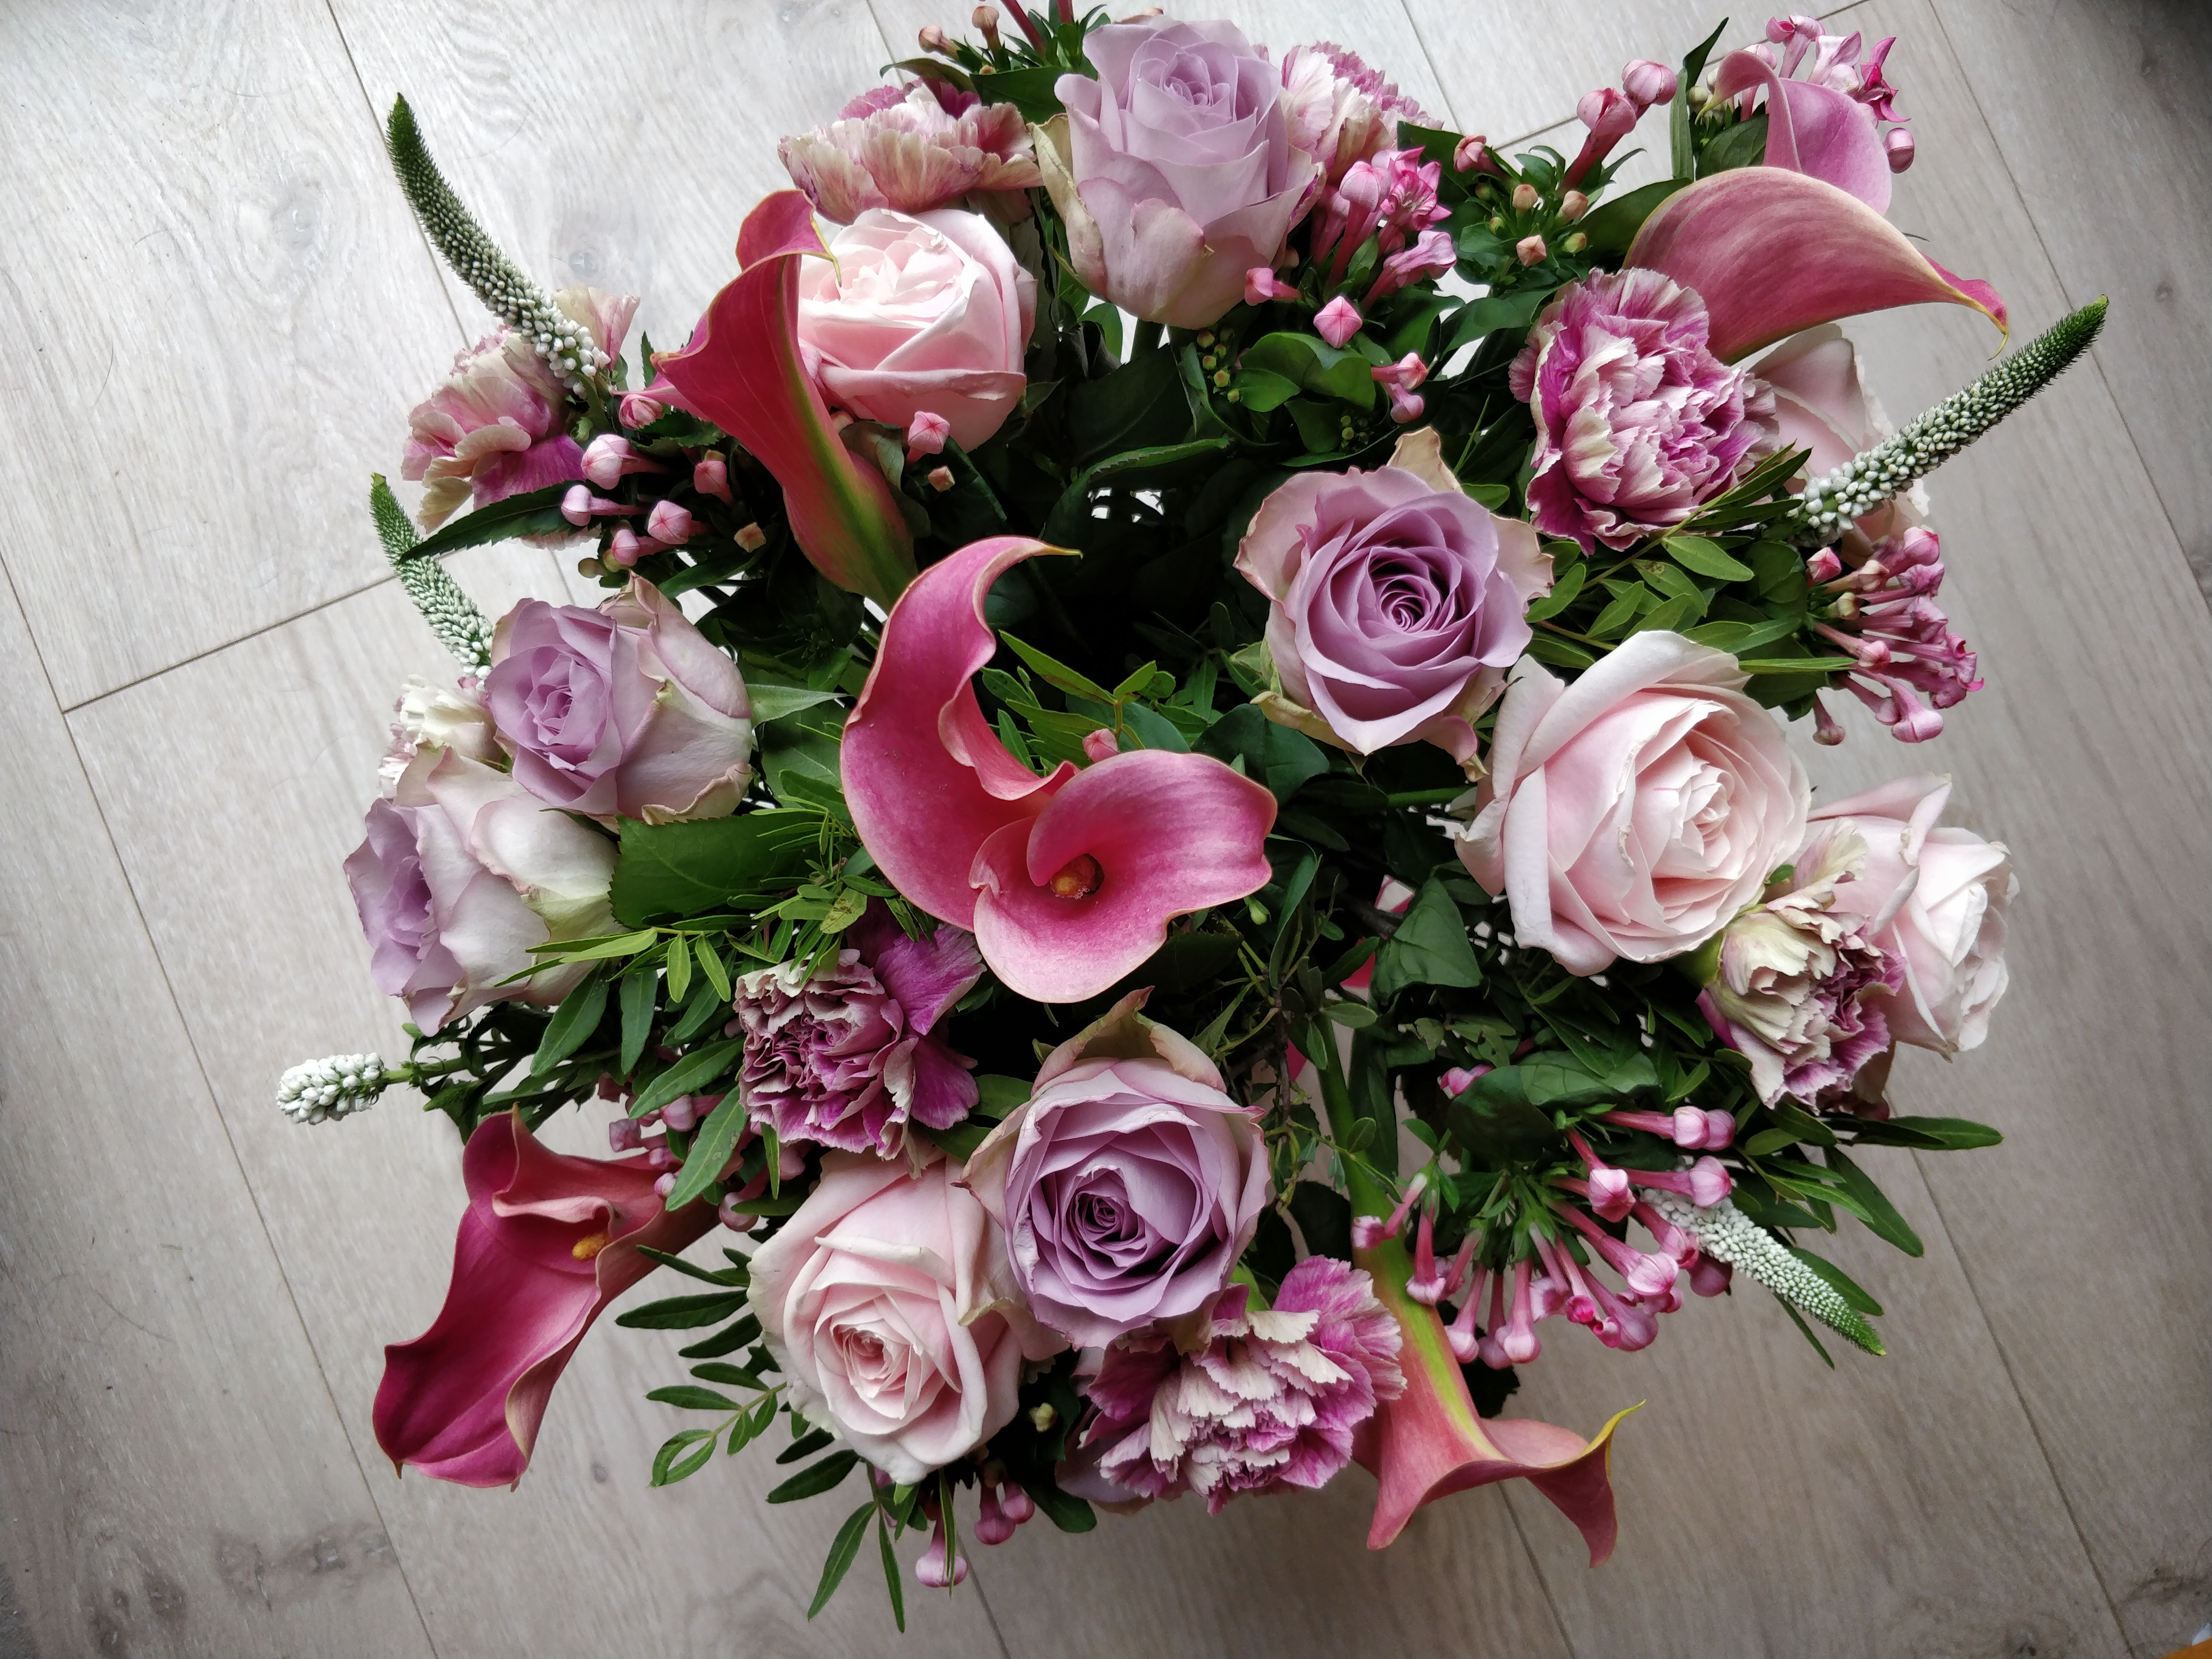 Orion Bouquet from Prestige Flowers